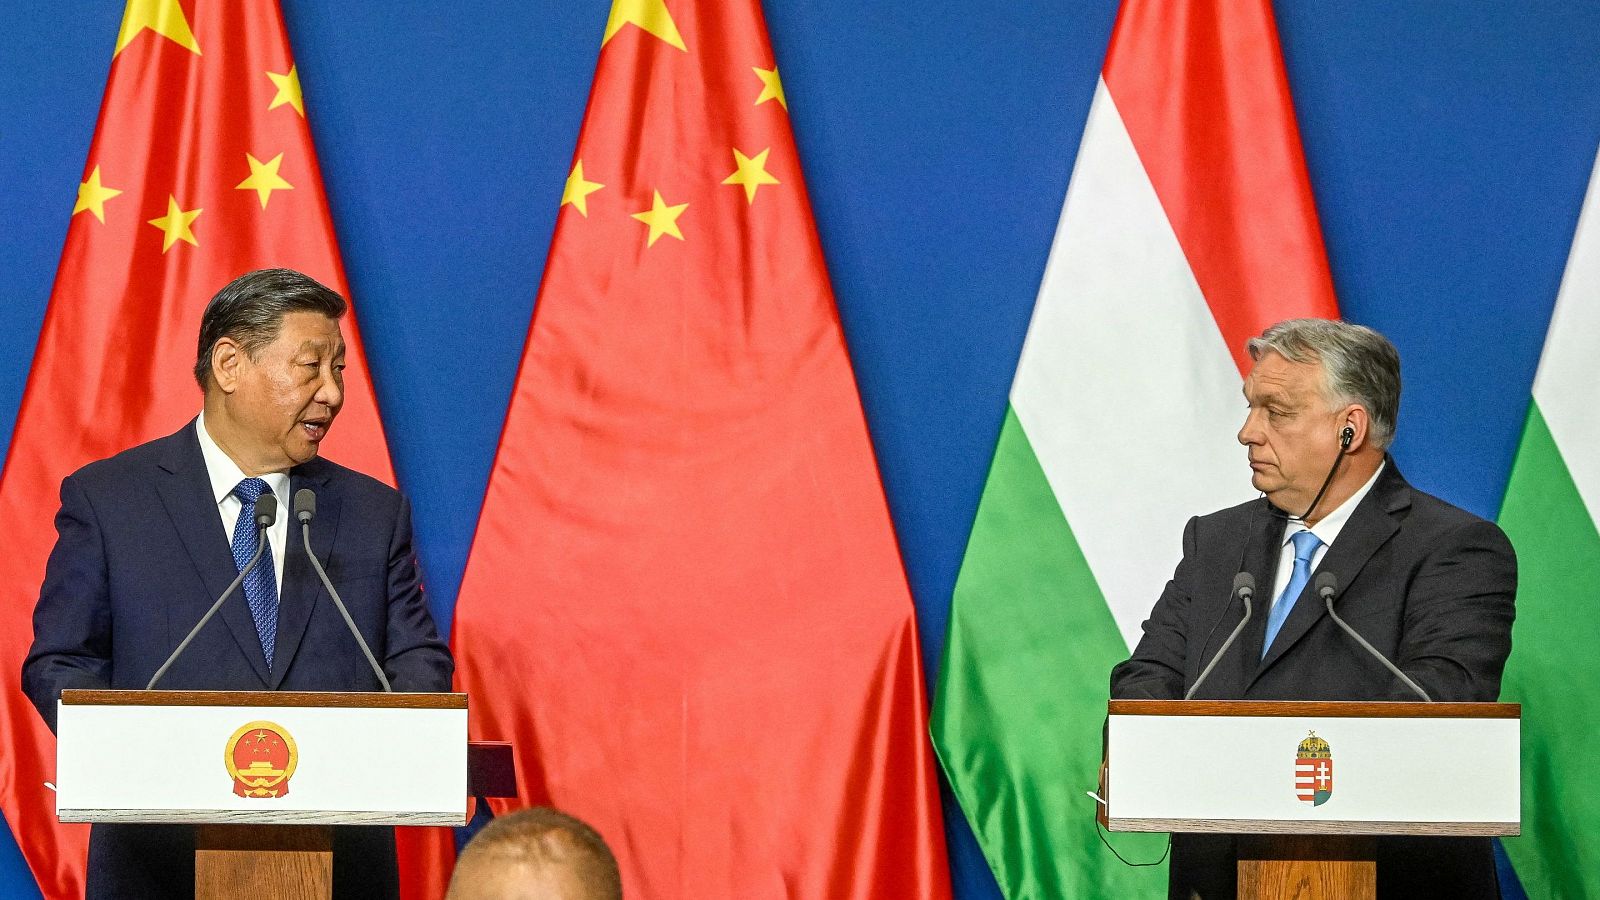 Víktor Orbán y Xi Jinping refuerzan sus lazos diplomáticos ante los recelos de la UE